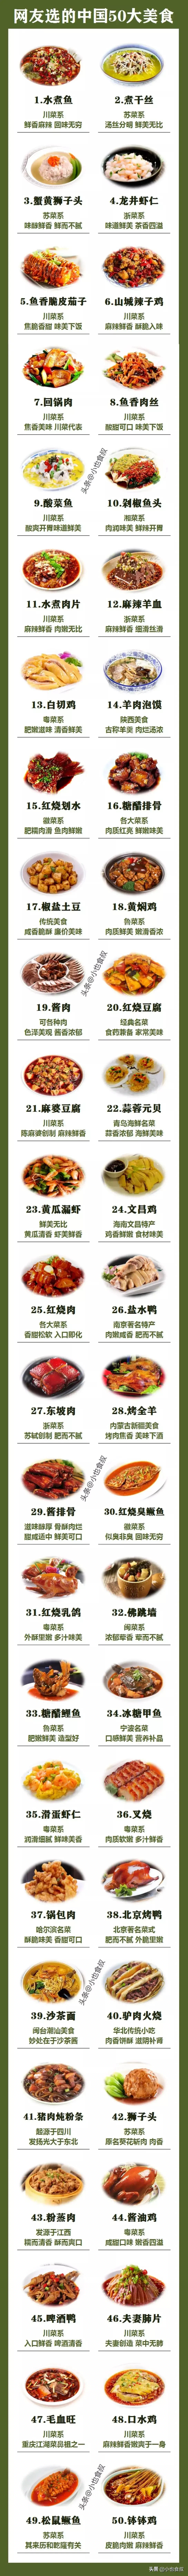 网友选出的中国最具代表性的50道特色美食